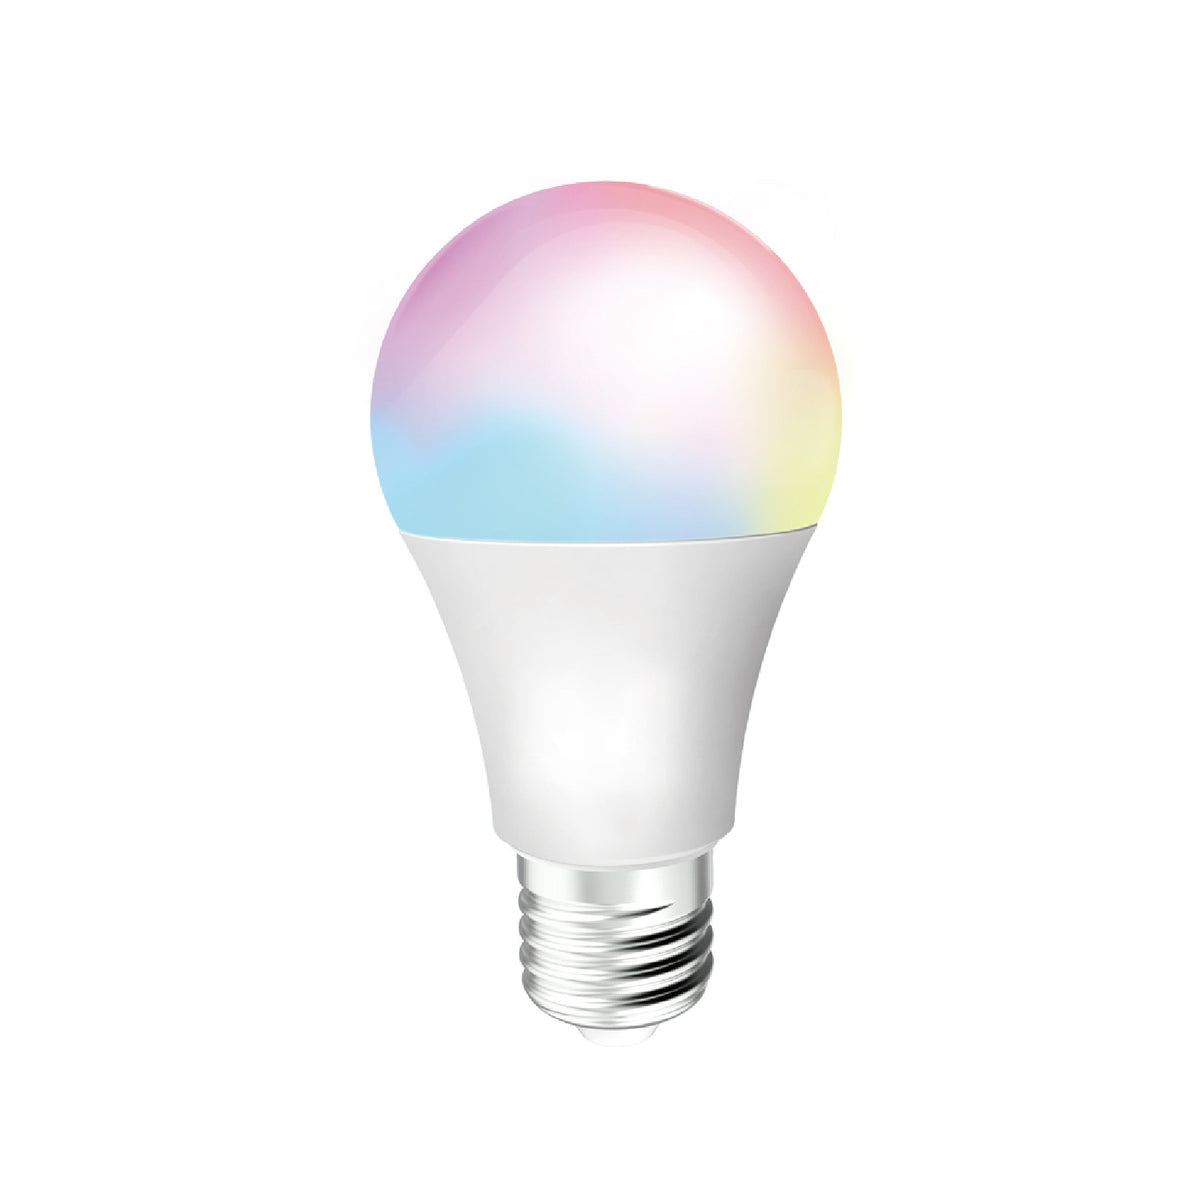 Intelligente Glühbirne 10 W 806 Lumen dimmbar mit Anwendung, die mit Google und Alexa kompatibel ist